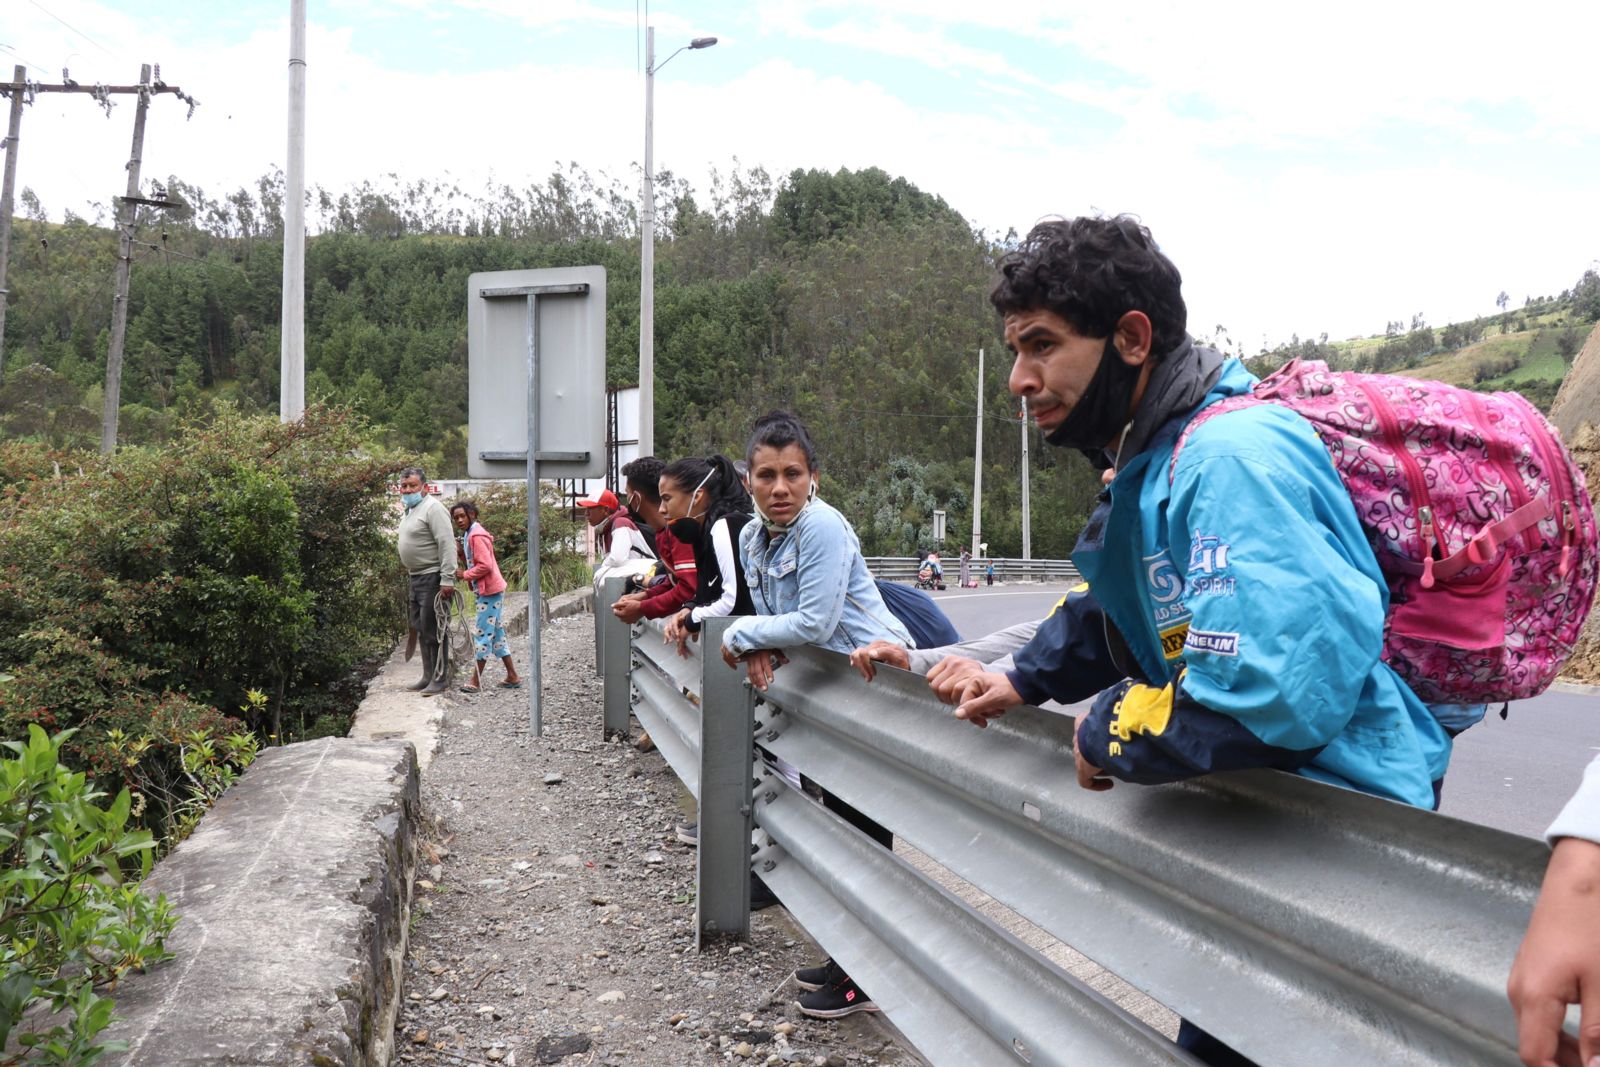 Los refugiados y migrantes en Ecuador enfrentan riesgos crecientes ante una reducción de las protecciones